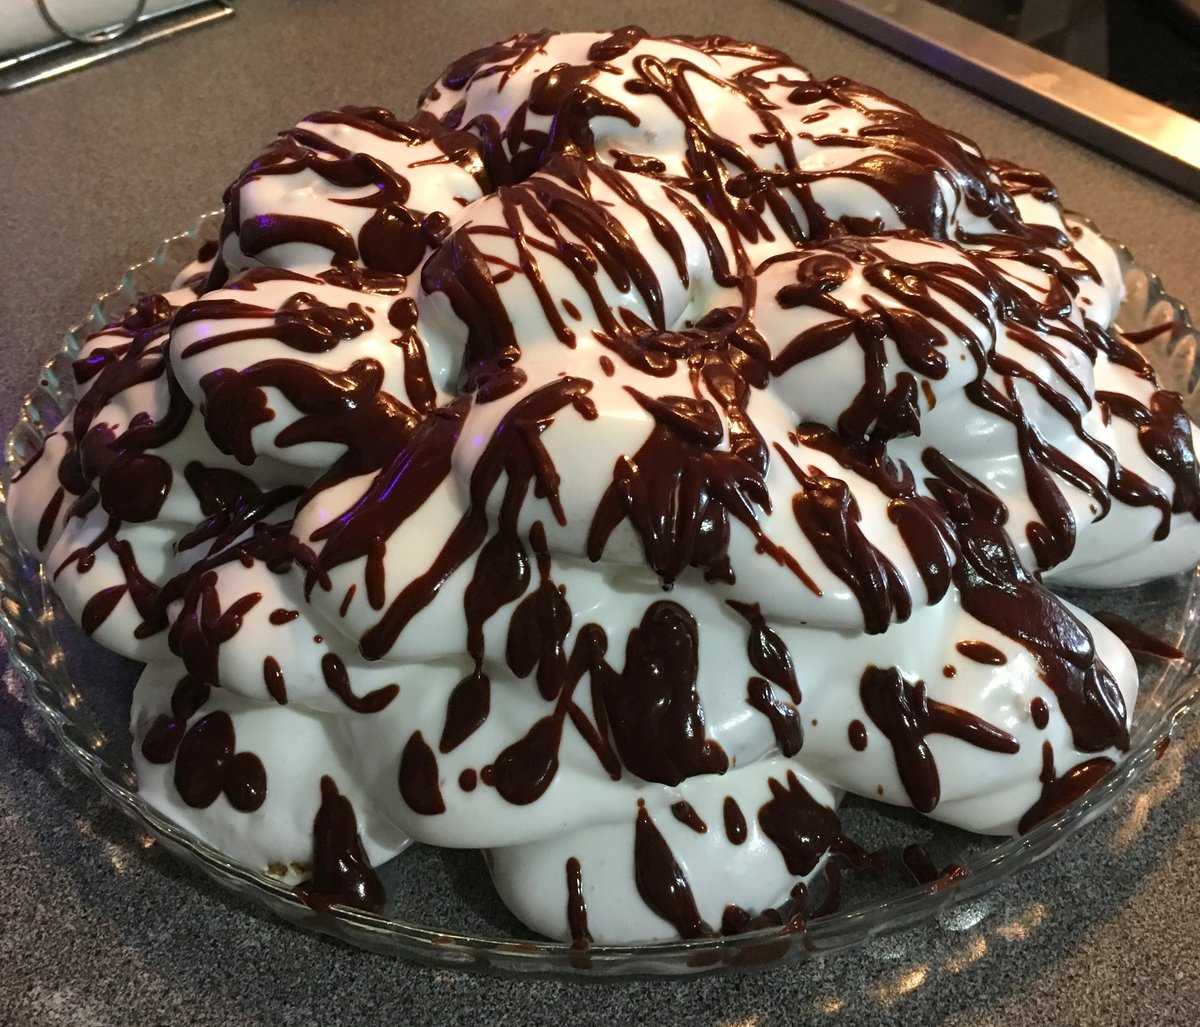 Крем для торта из сметаны - домашние рецепты с фото пошагово